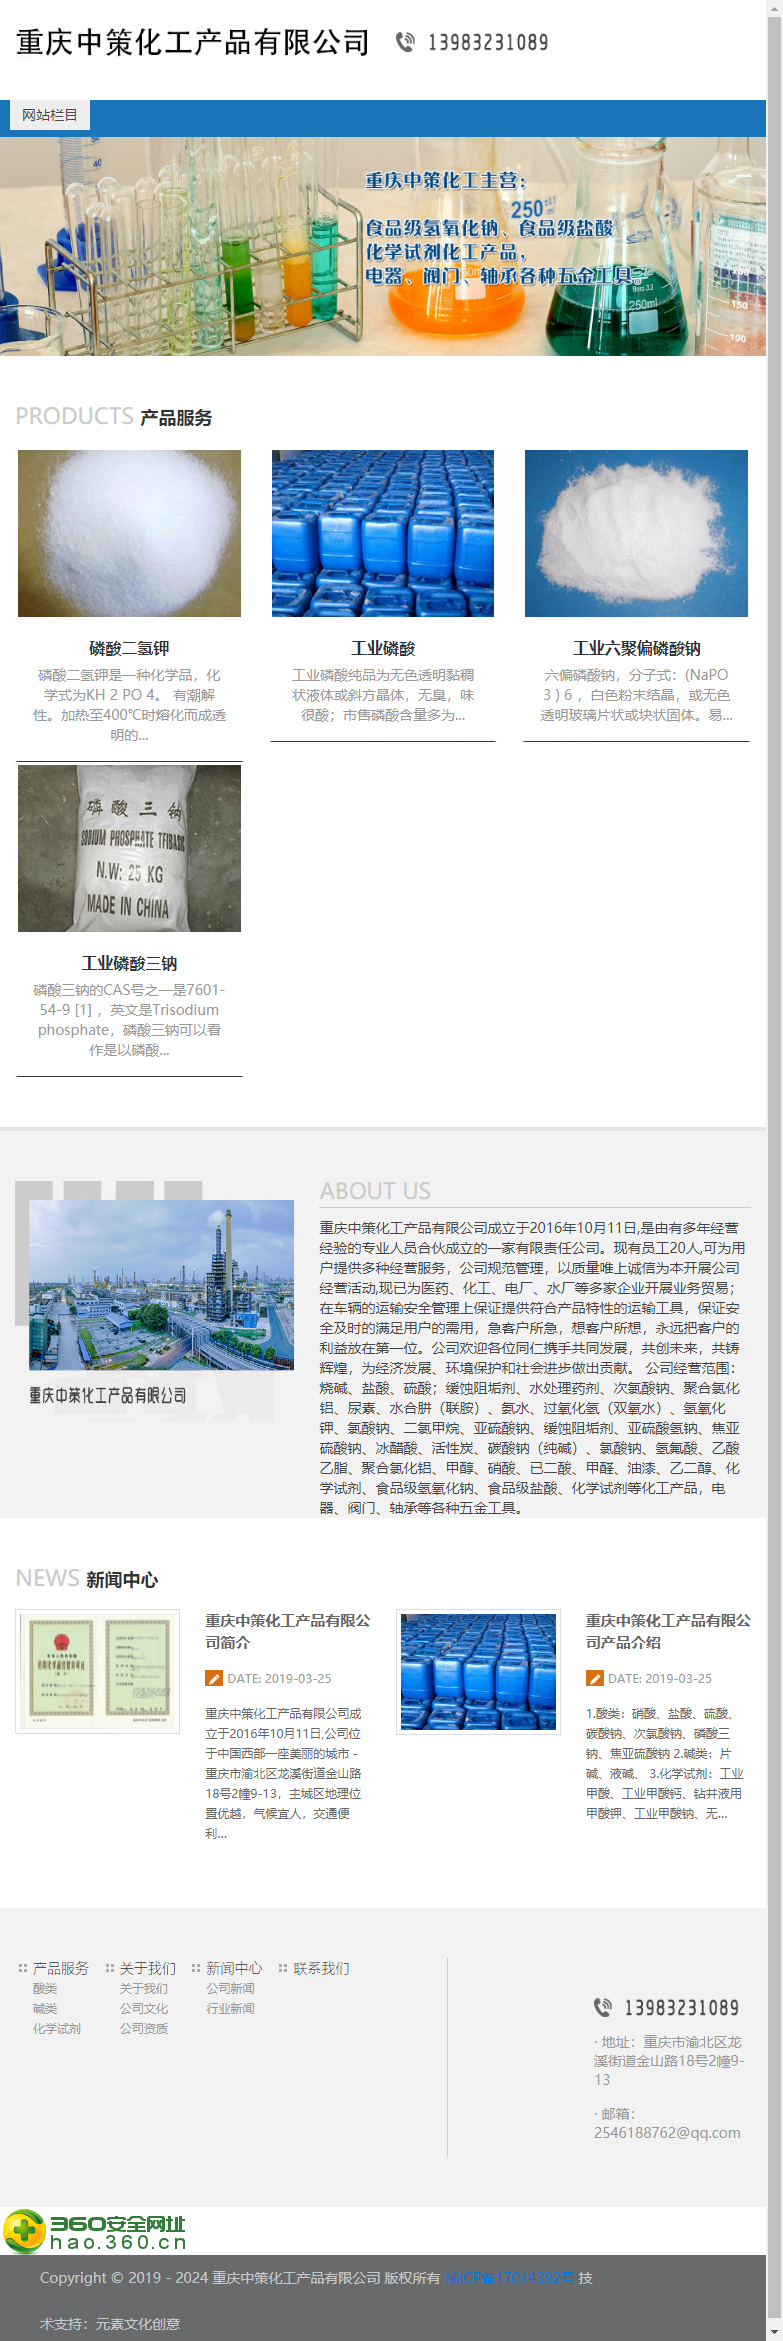 重庆中策化工产品有限公司网站案例